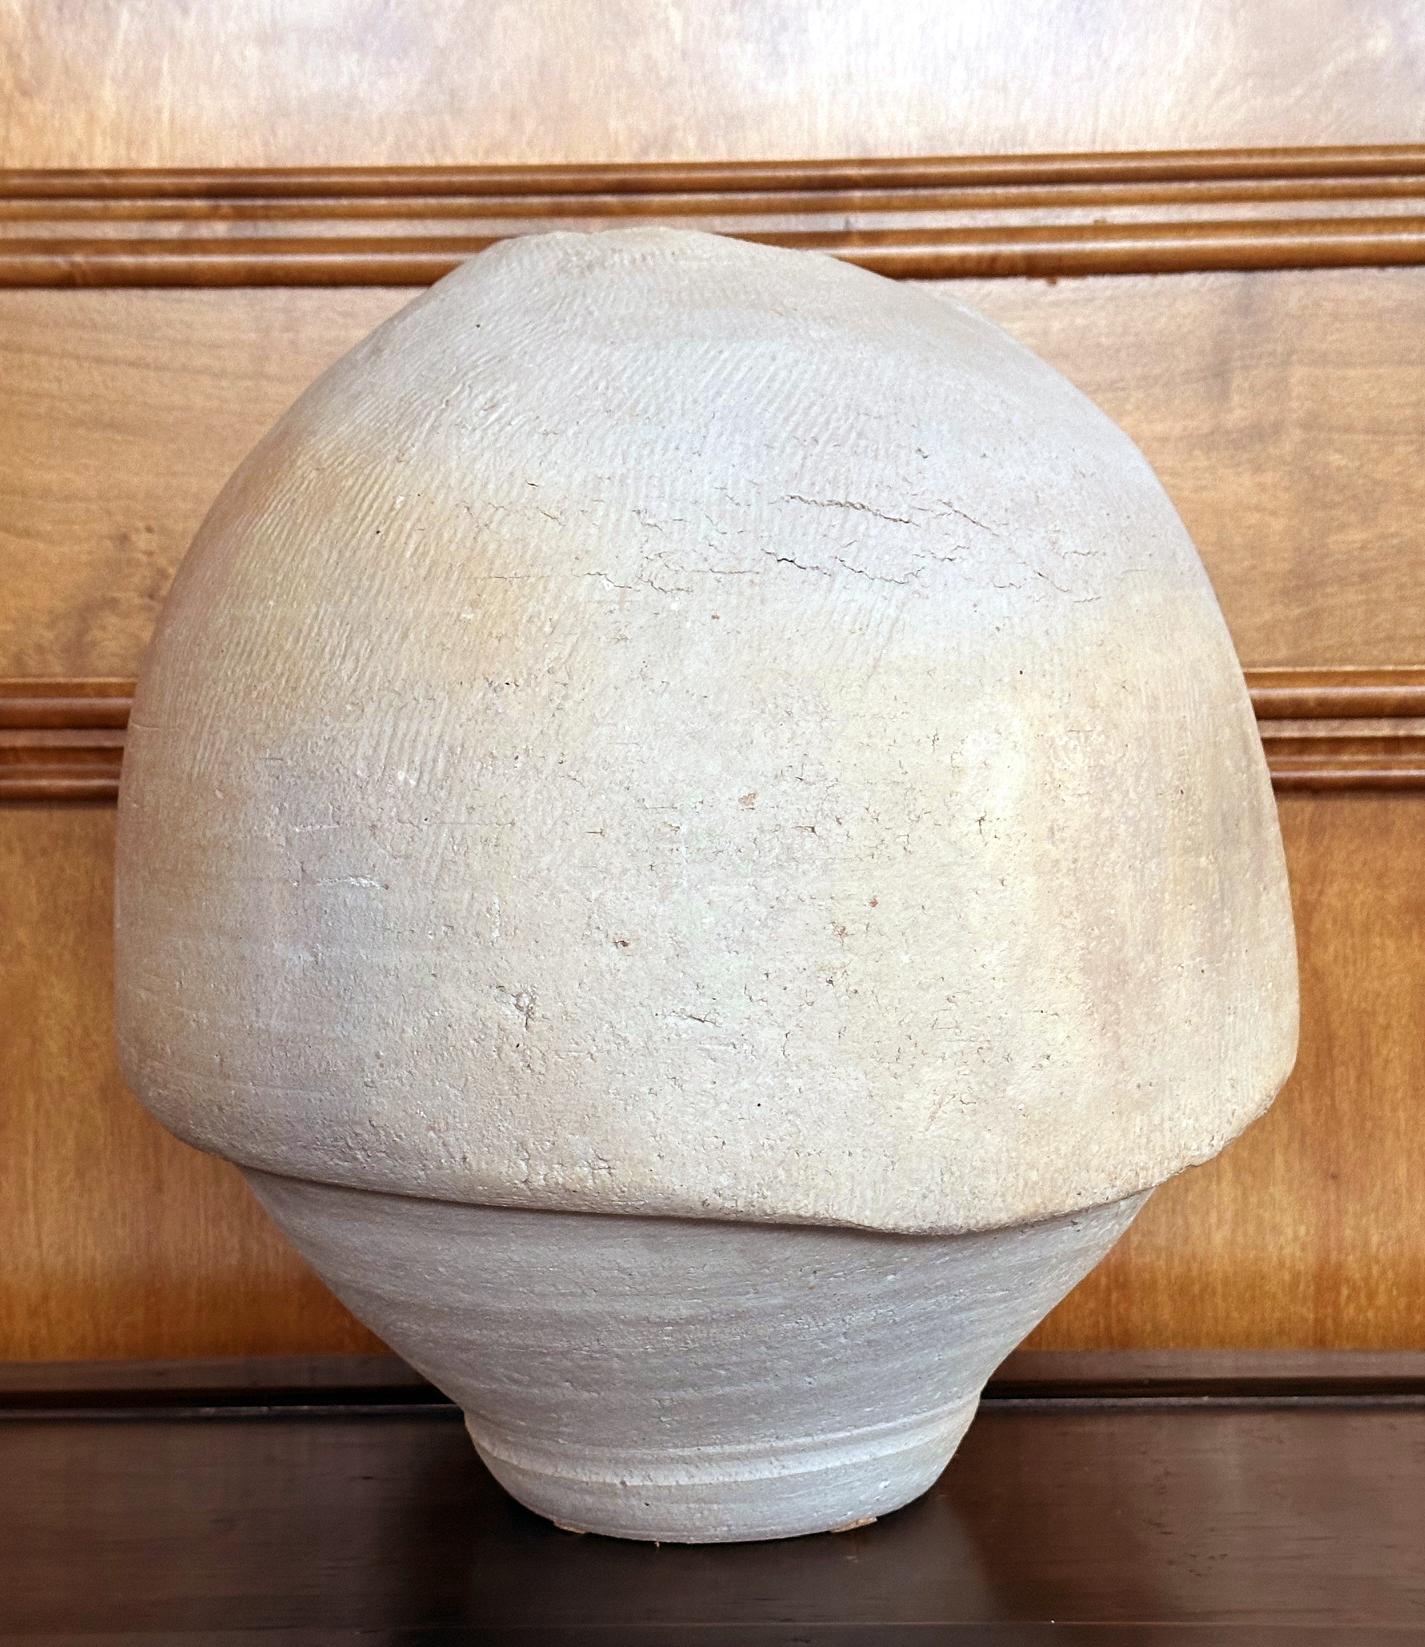 Vase en poterie moderne du potier américain Paul Soldner (1921-2011), vers les années 1960. Paul Dedic est réputé pour son engagement à développer et à faire progresser la cuisson Raku dans le domaine de la poterie américaine. Inspiré par la